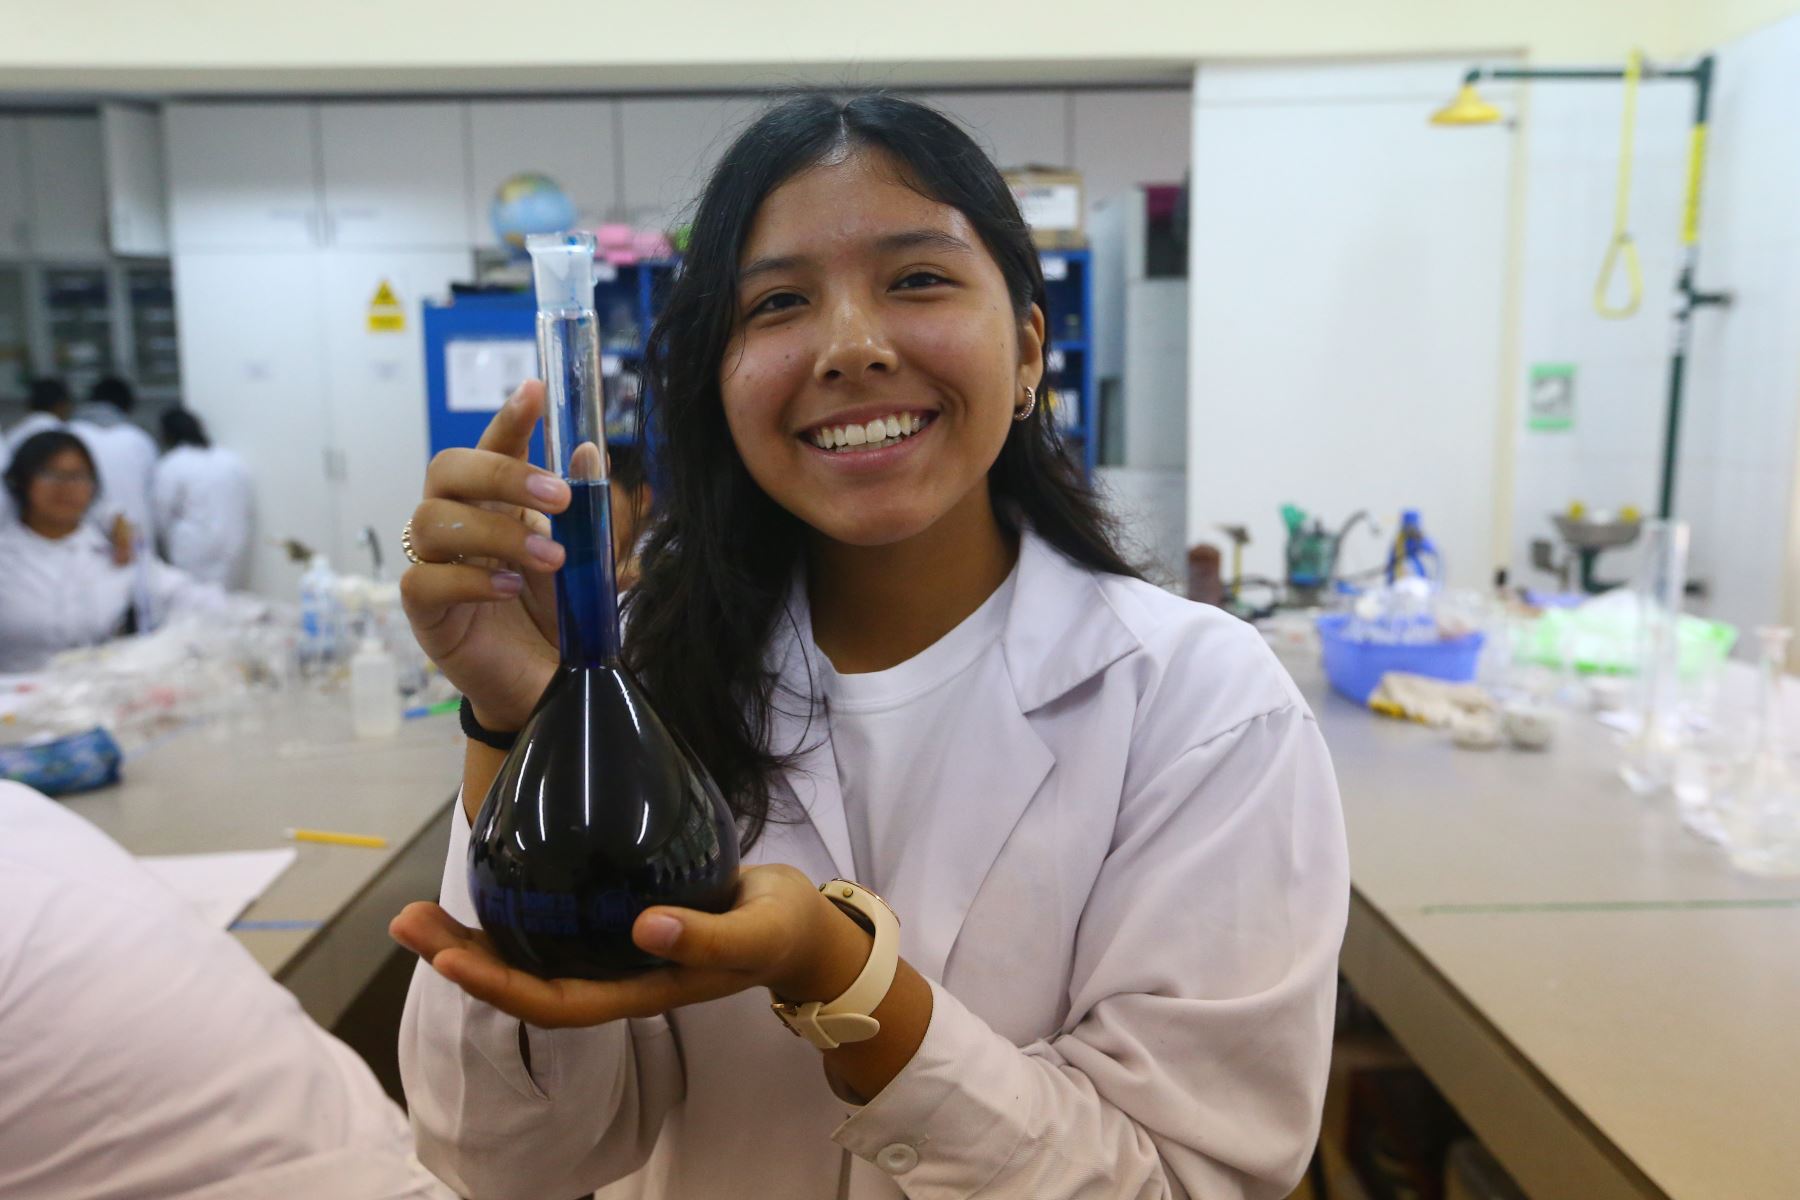 La estudiante Yamila Rivas Molina fue elegida como parte de la tripulación del programa "Ella es Astronauta" para visitar la NASA.  Foto: ANDINA/Eddy Ramos